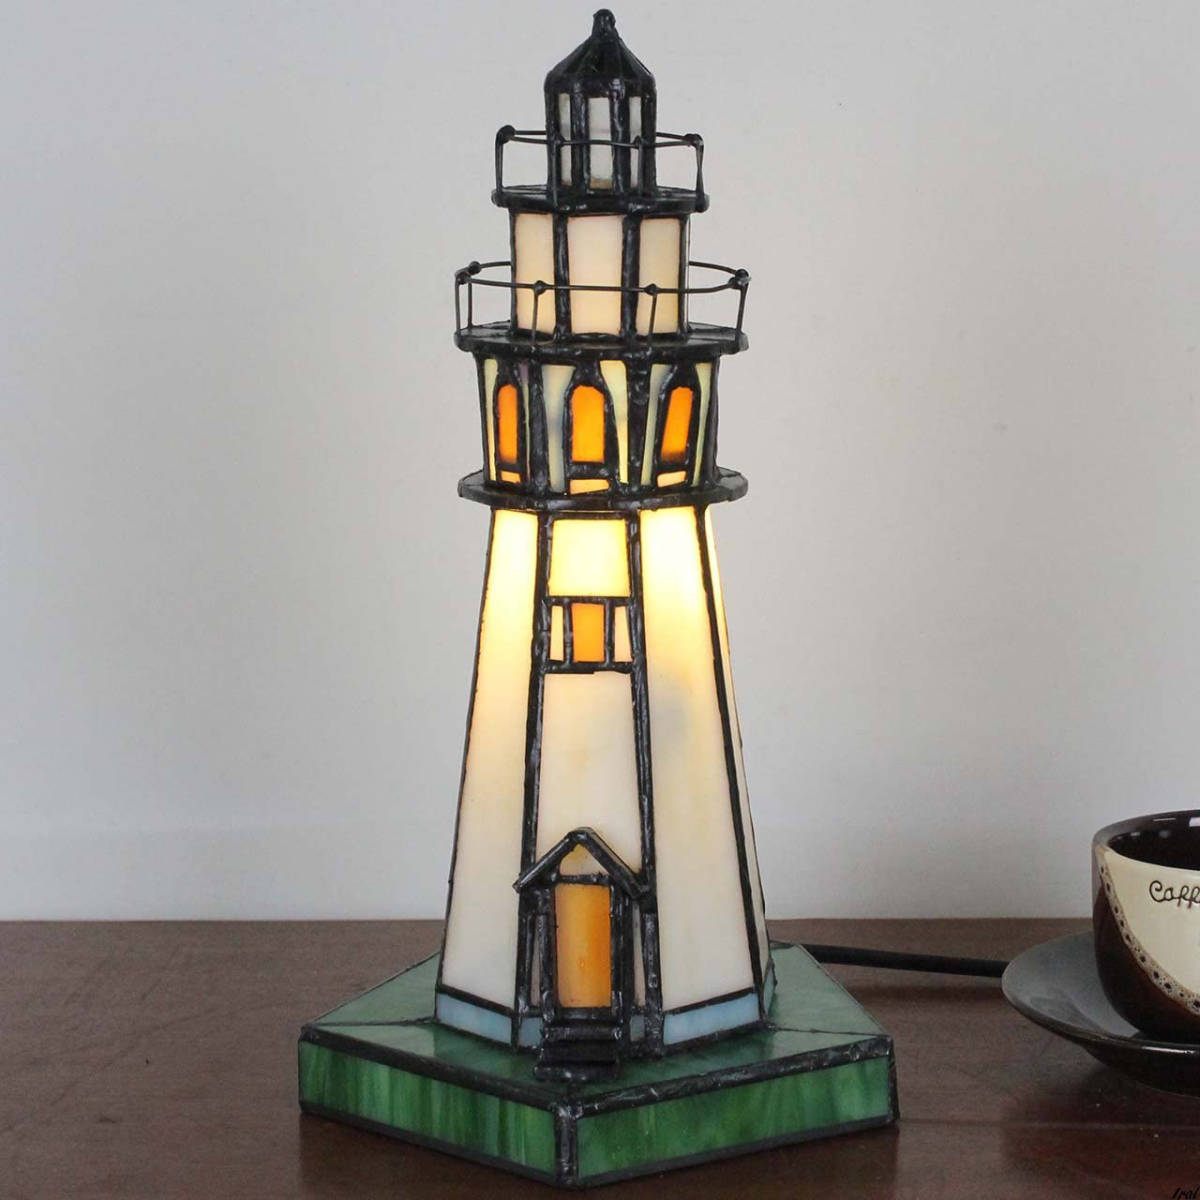 ステンドグラスランプ 灯台型 プレゼント テーブルランプ 小夜灯